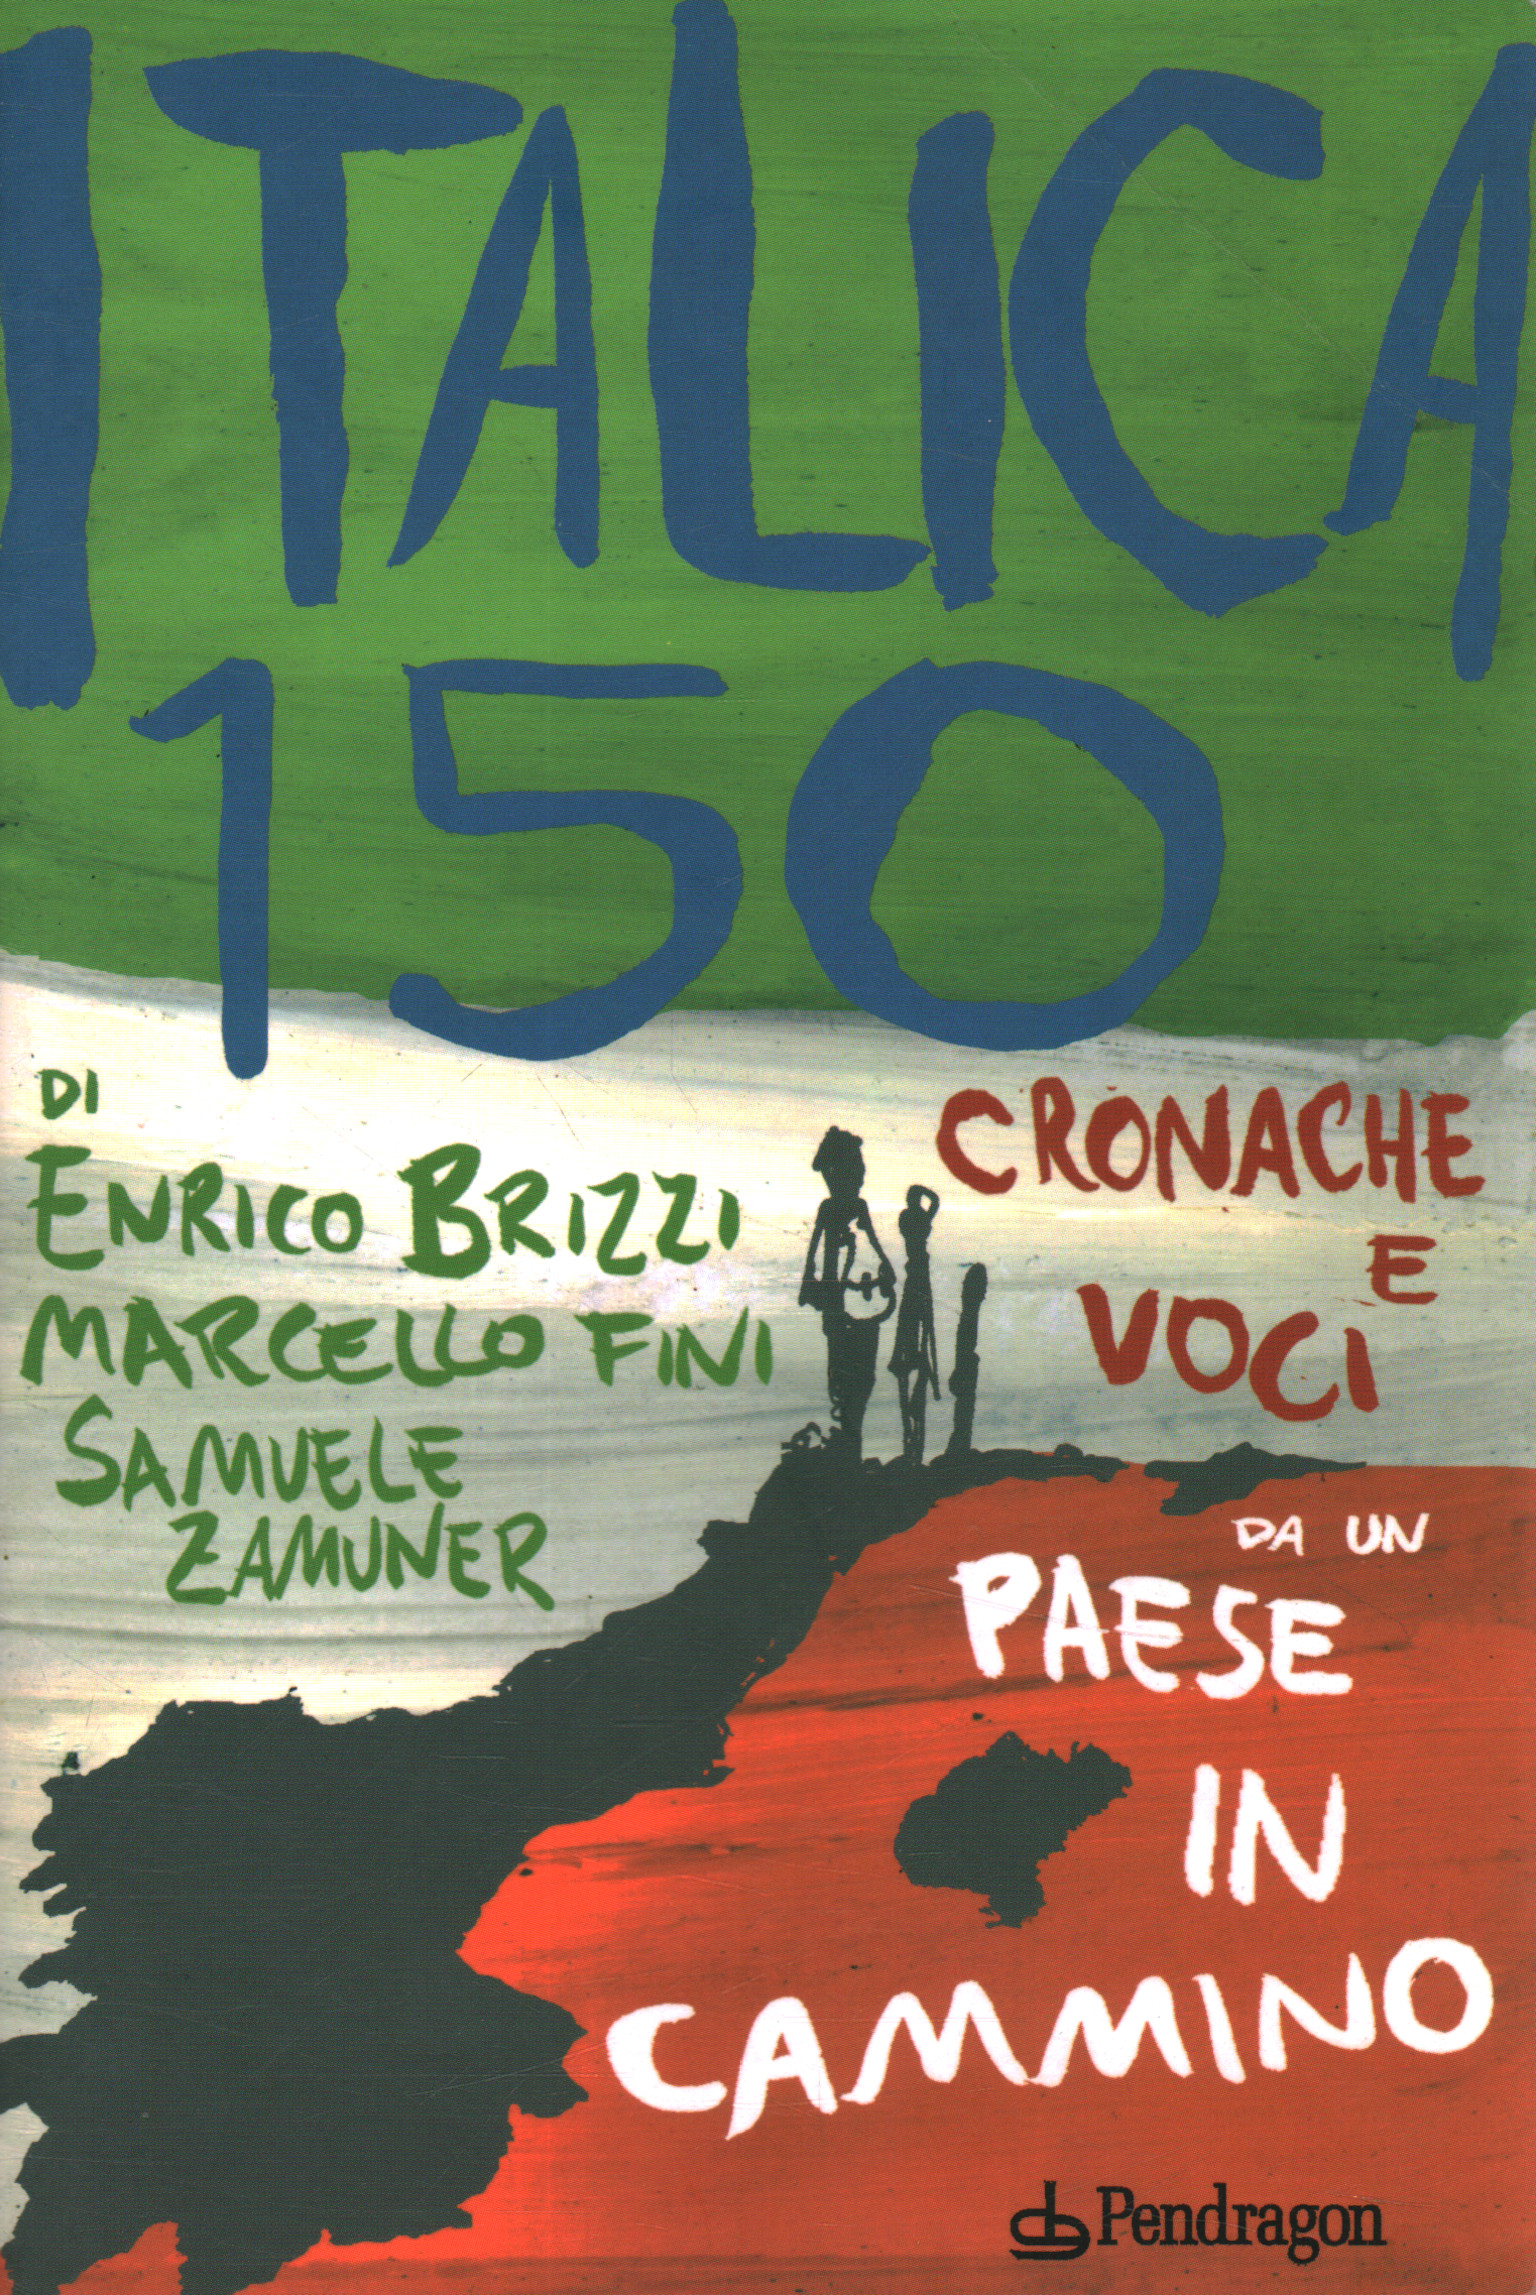 Italica 150